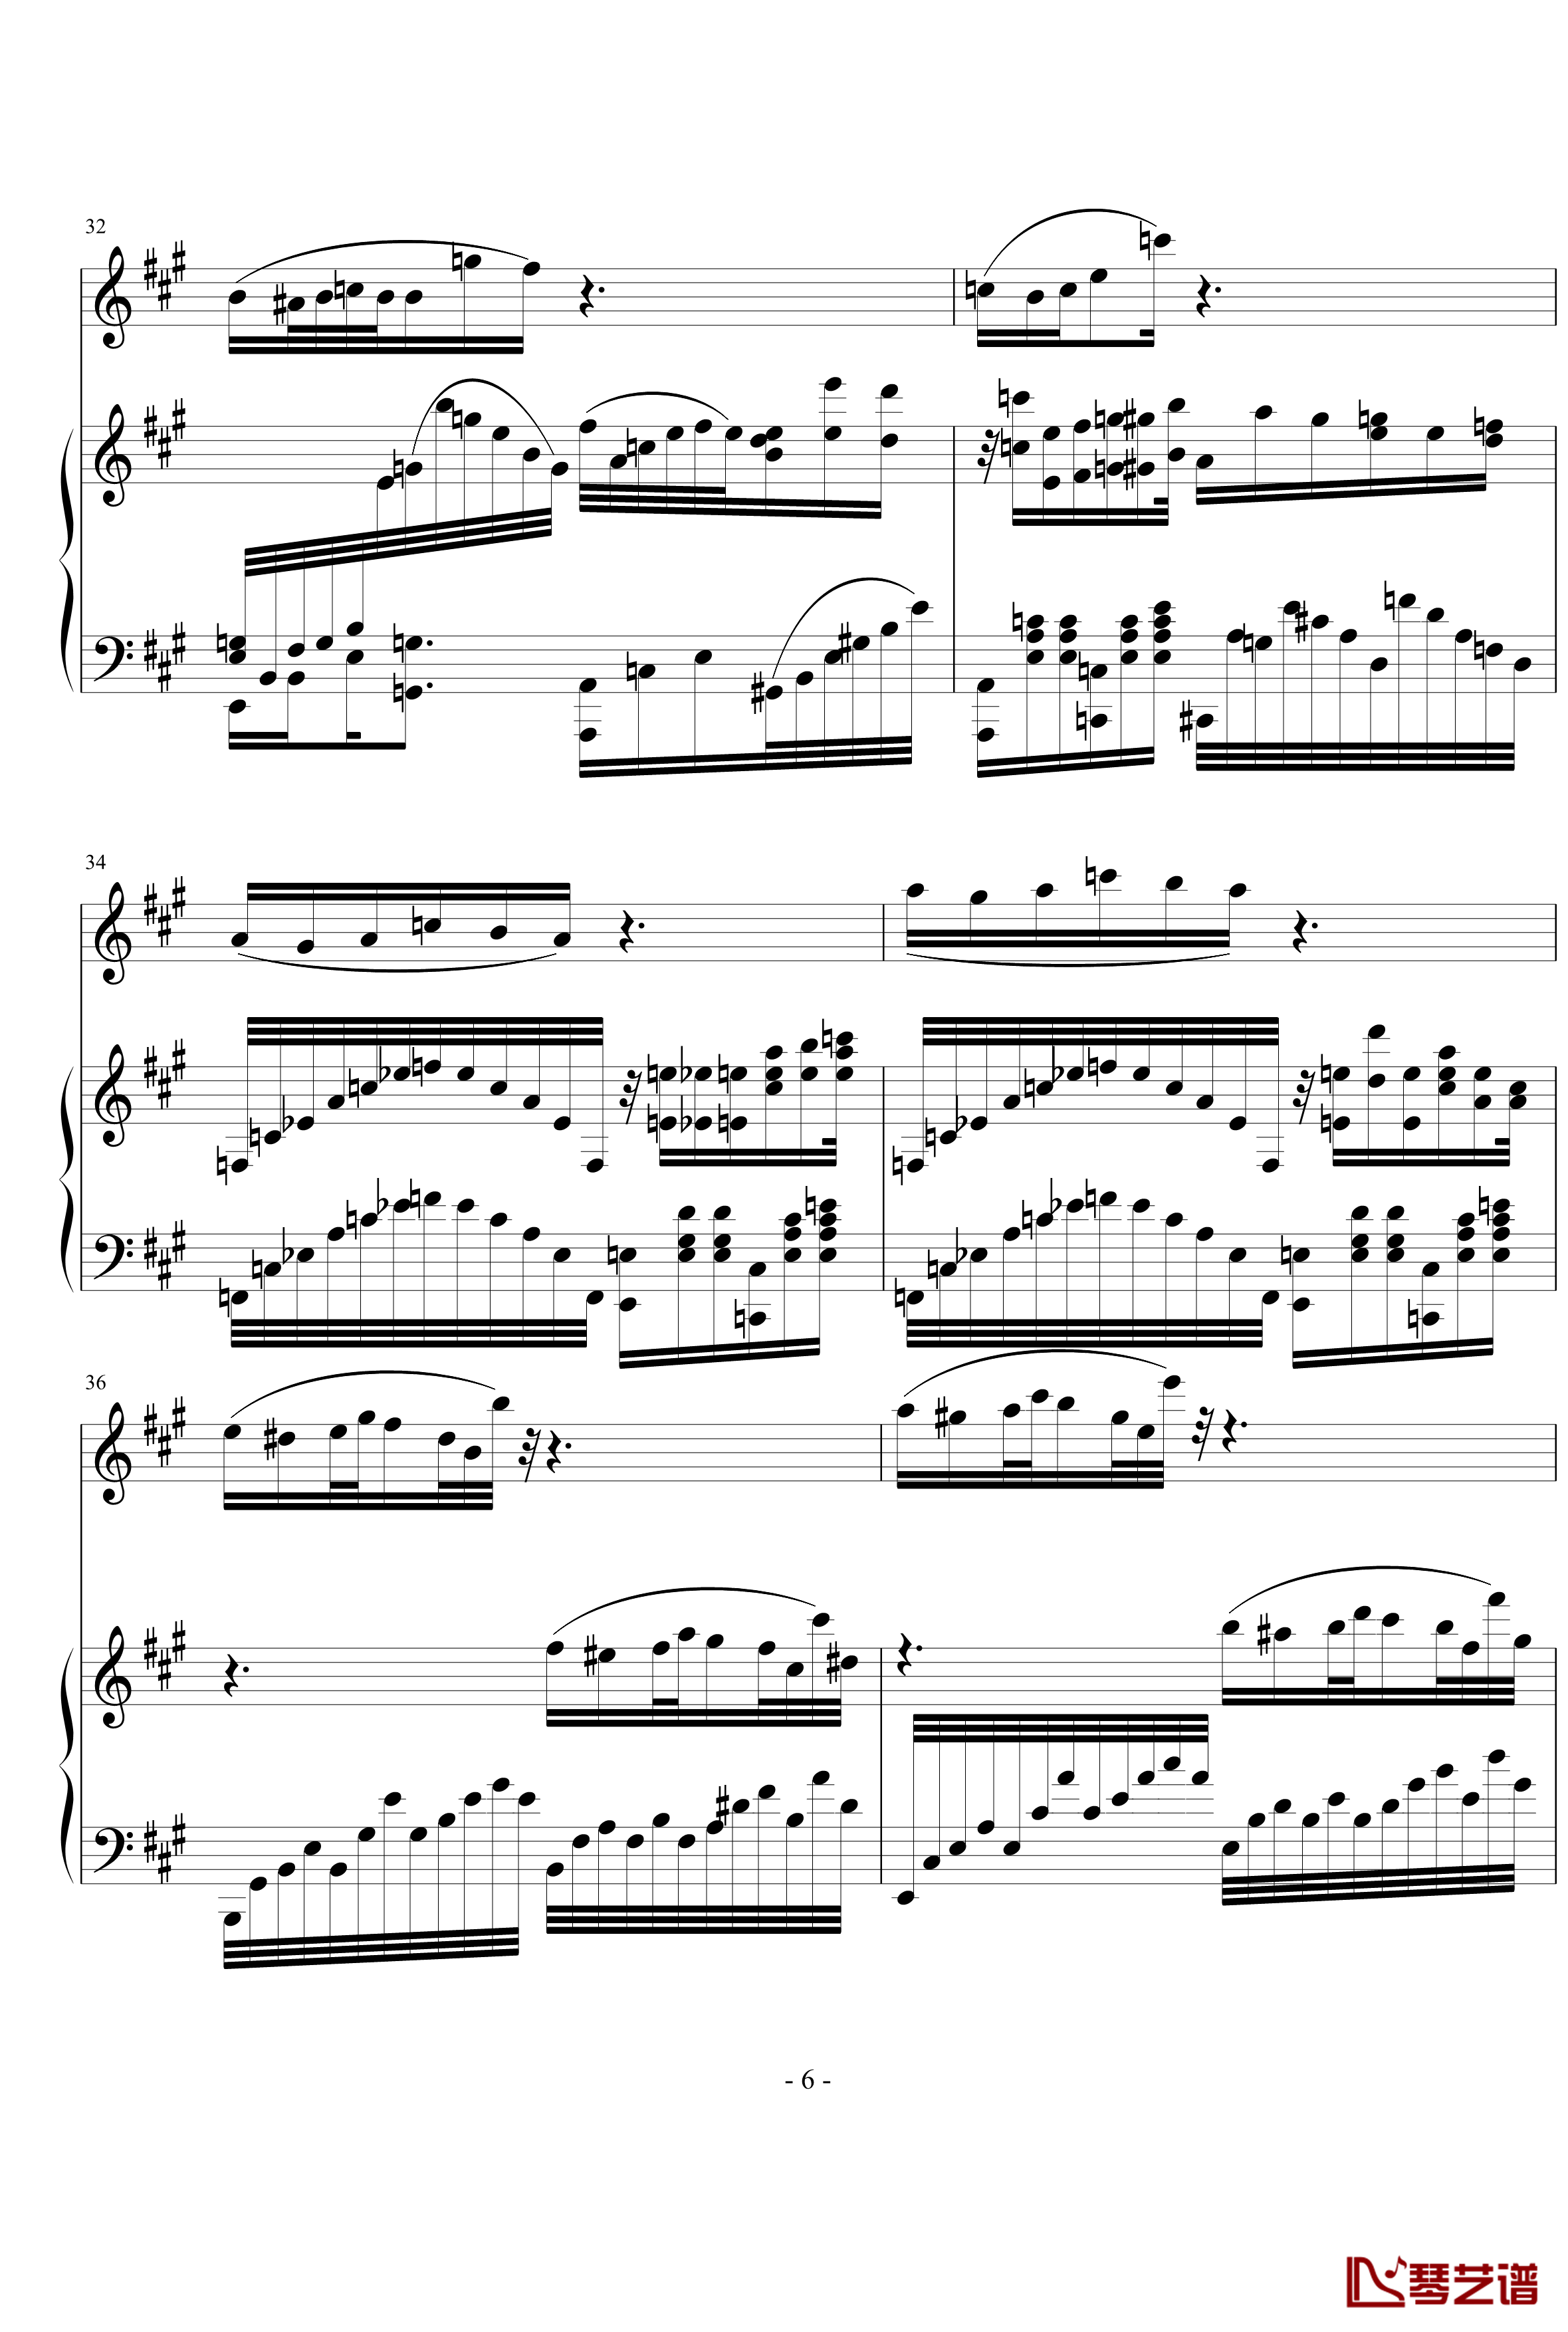 钢琴单簧管小奏鸣曲钢琴谱-nyride6